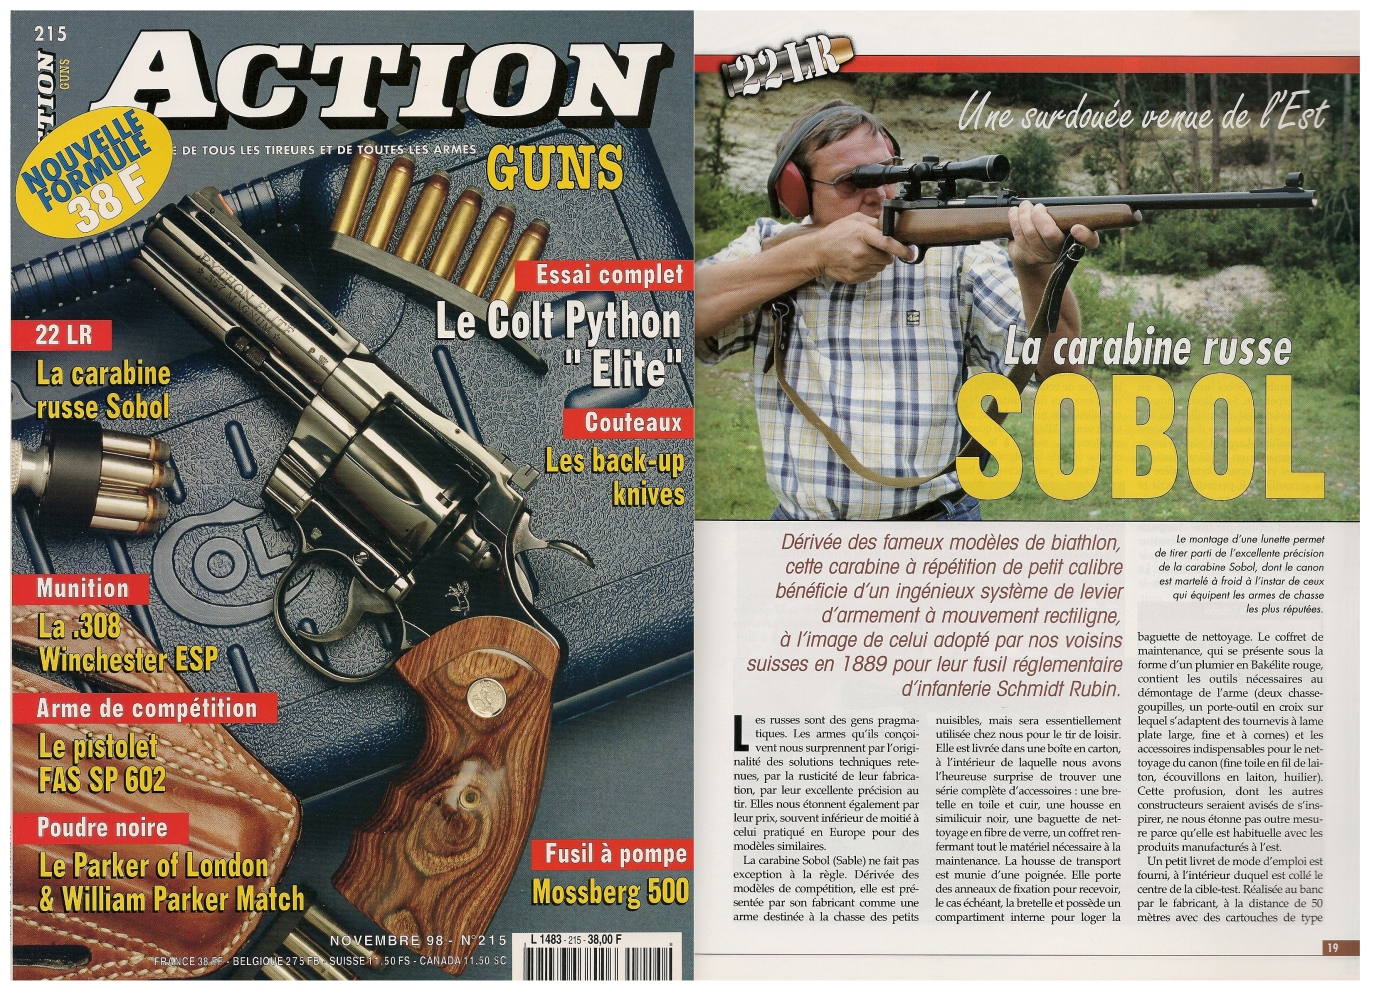 Le banc d’essai de la carabine Izhmash « Sobol » a été publié sur 5 pages dans le magazine Action Guns n°215 (novembre 1998). 